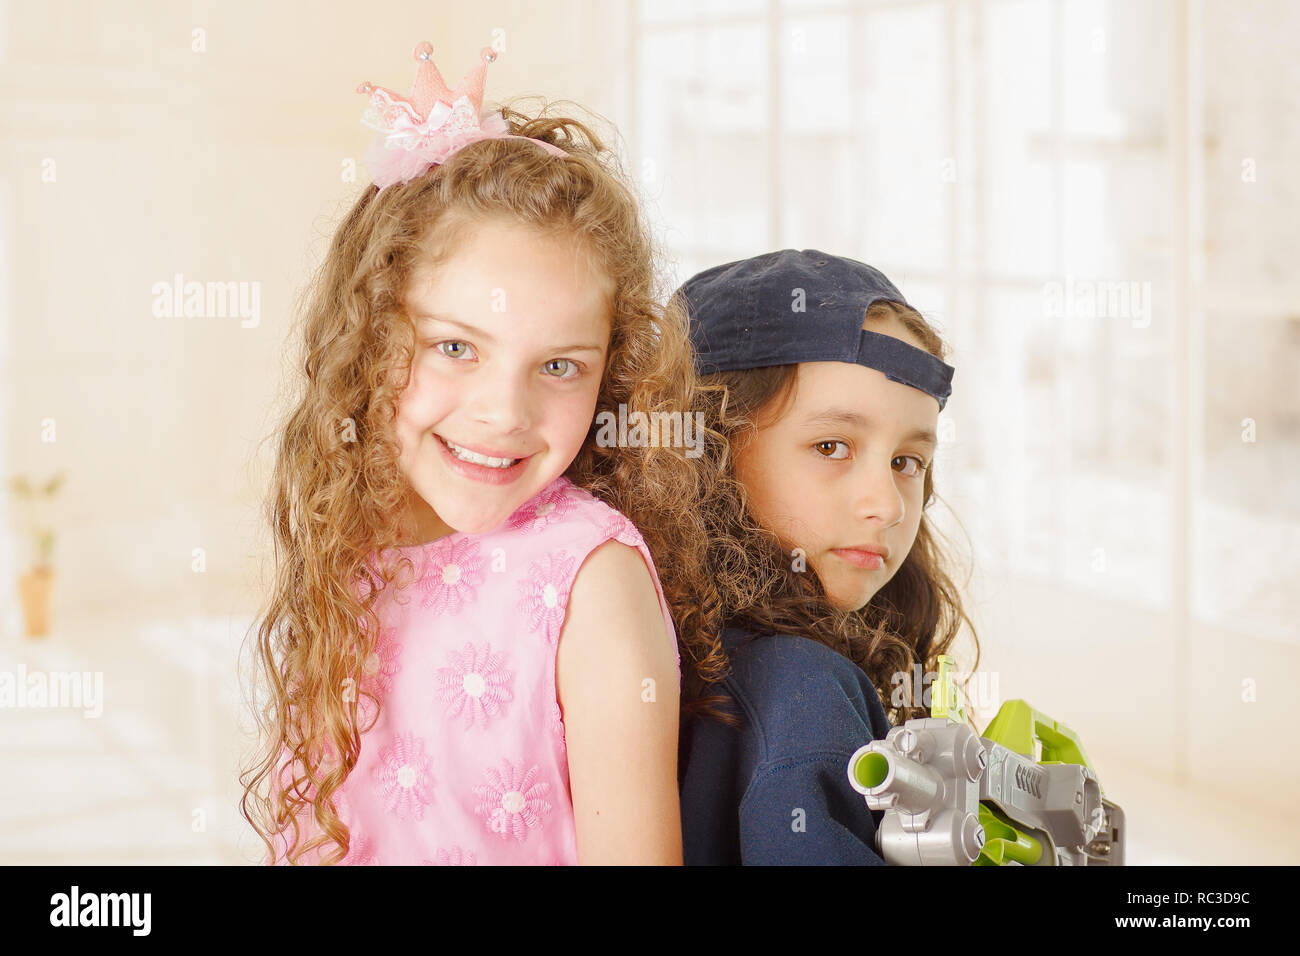 Close up de deux filles un garçon est wering vêtements et tenant un pistolet et de l'autre fille porte une robe princesse rose Banque D'Images